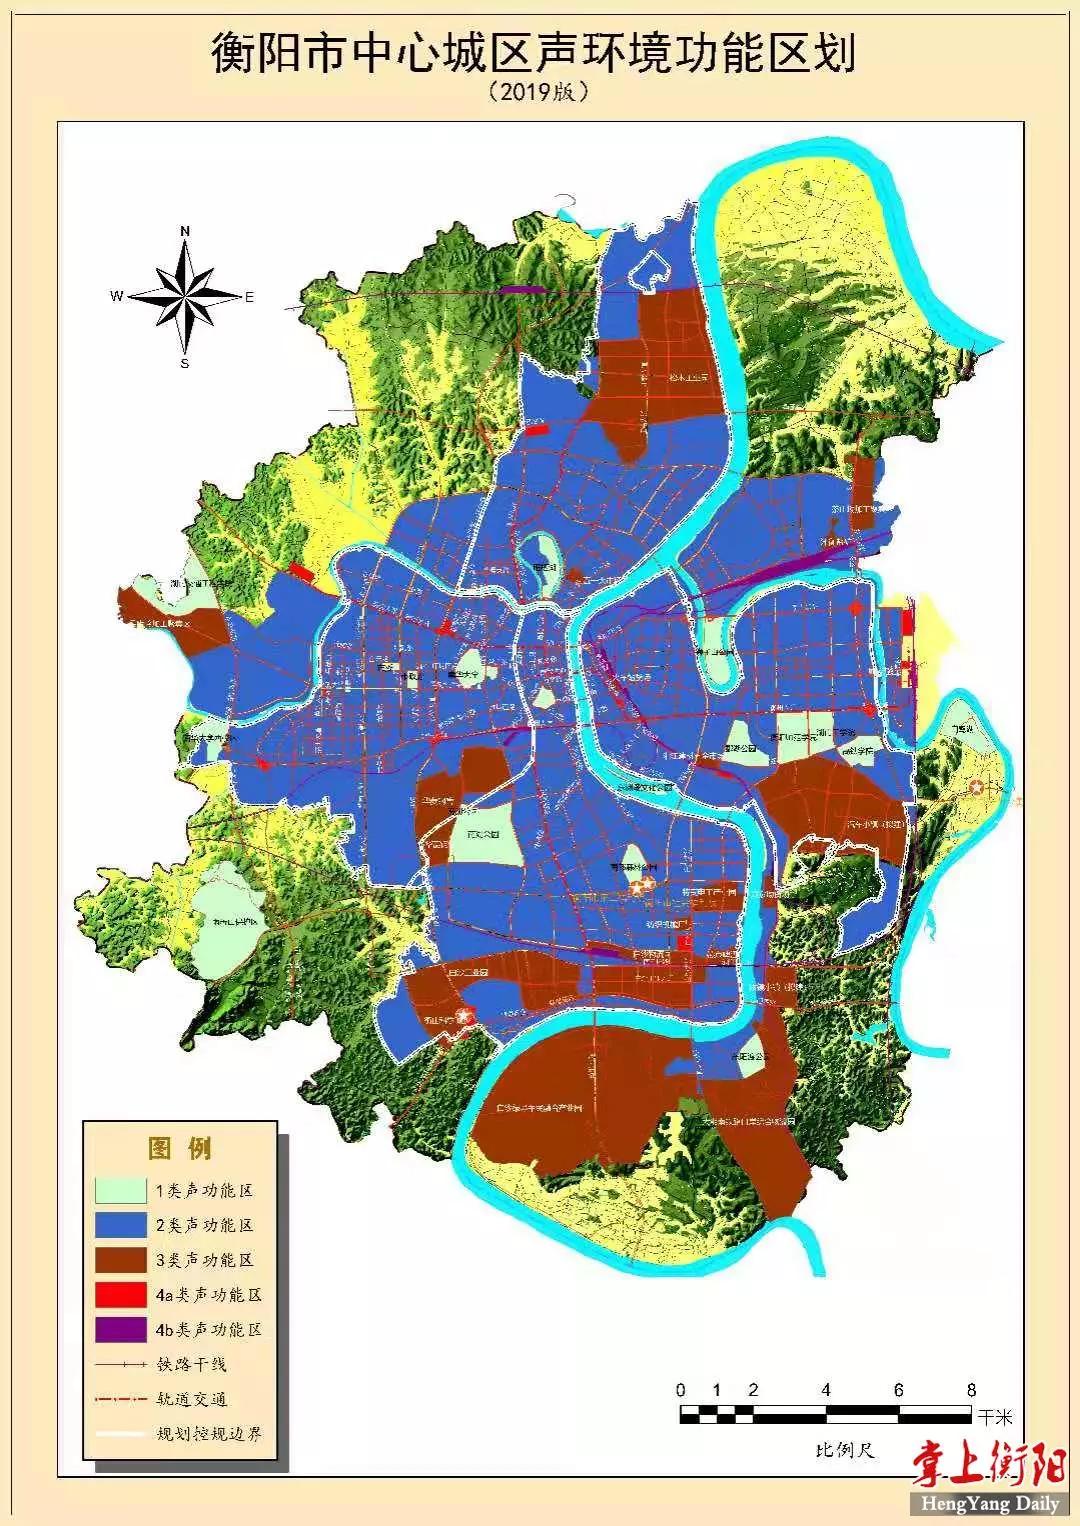 本《声环境功能区划分》适用范围为衡阳市中心城市规划区,包括雁峰区